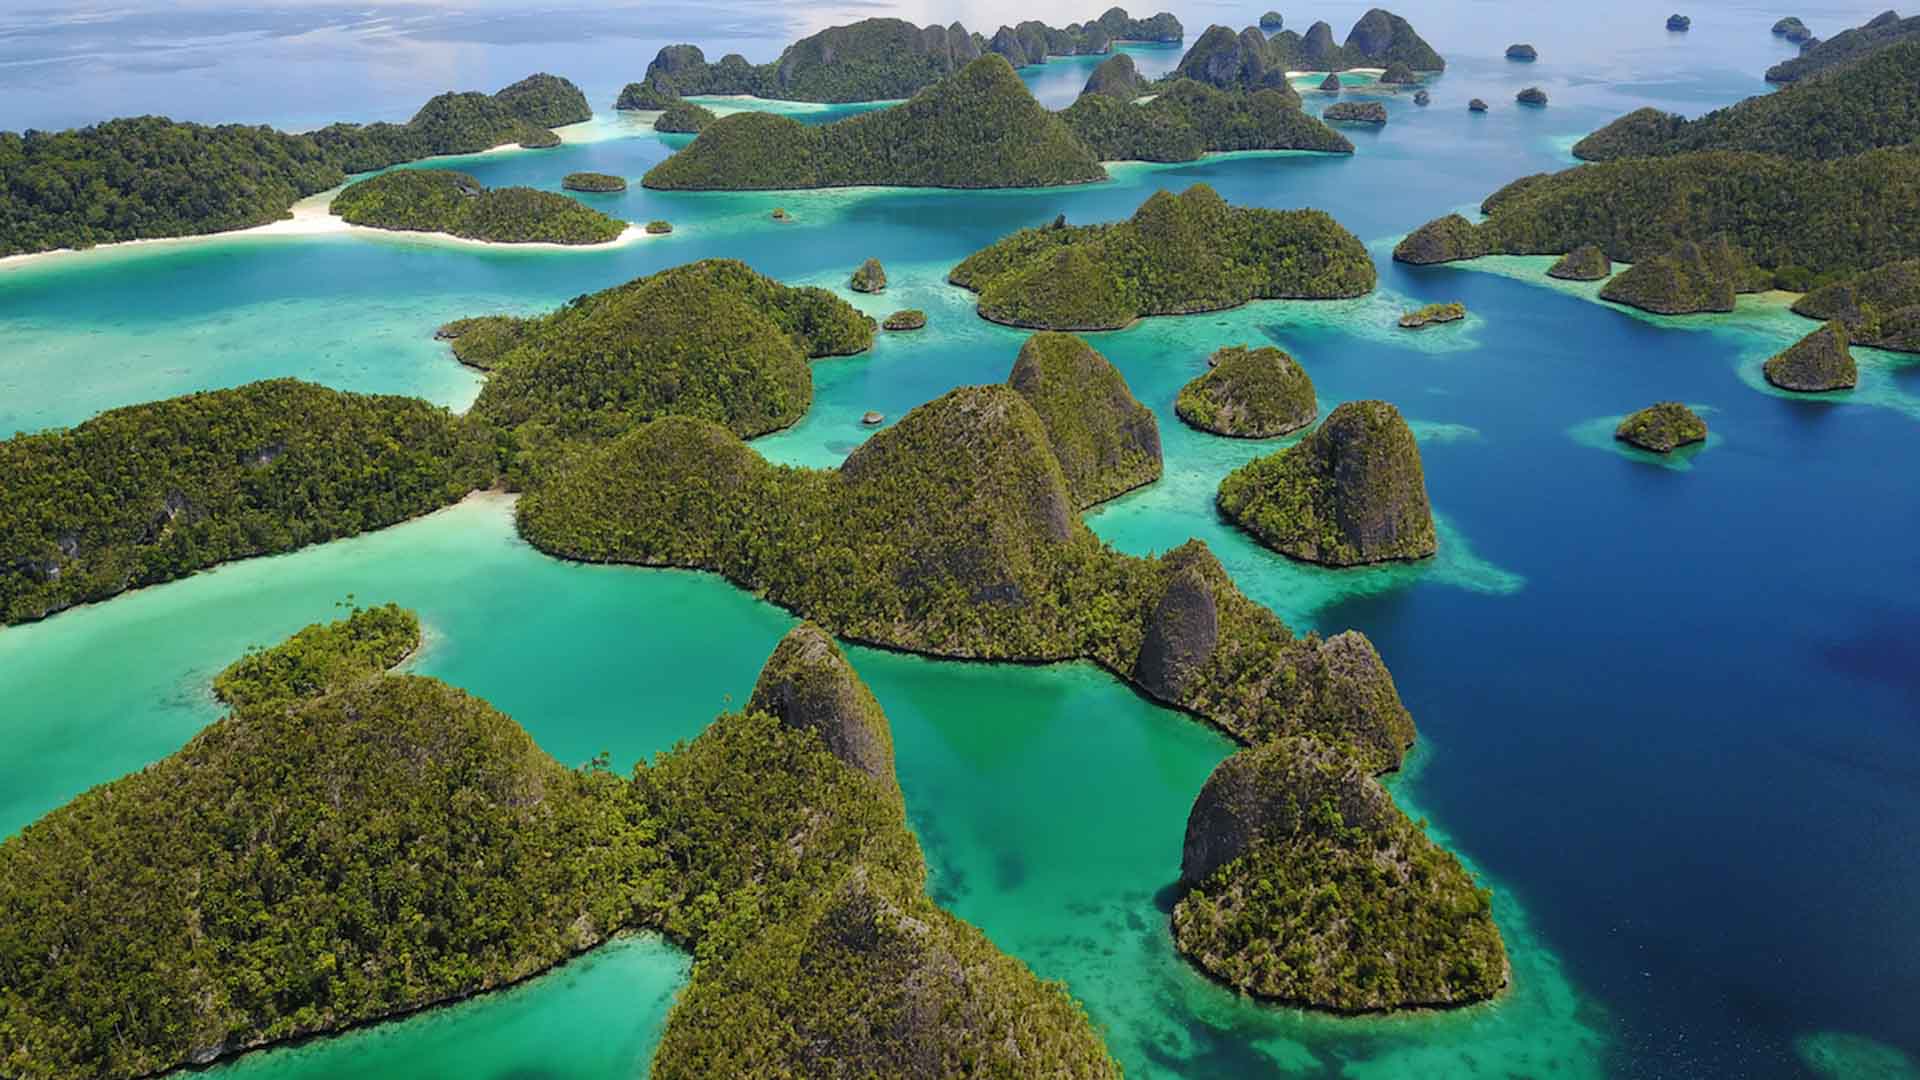 West Papua - Raja Ampat Scuba Diving — Dive Adventures